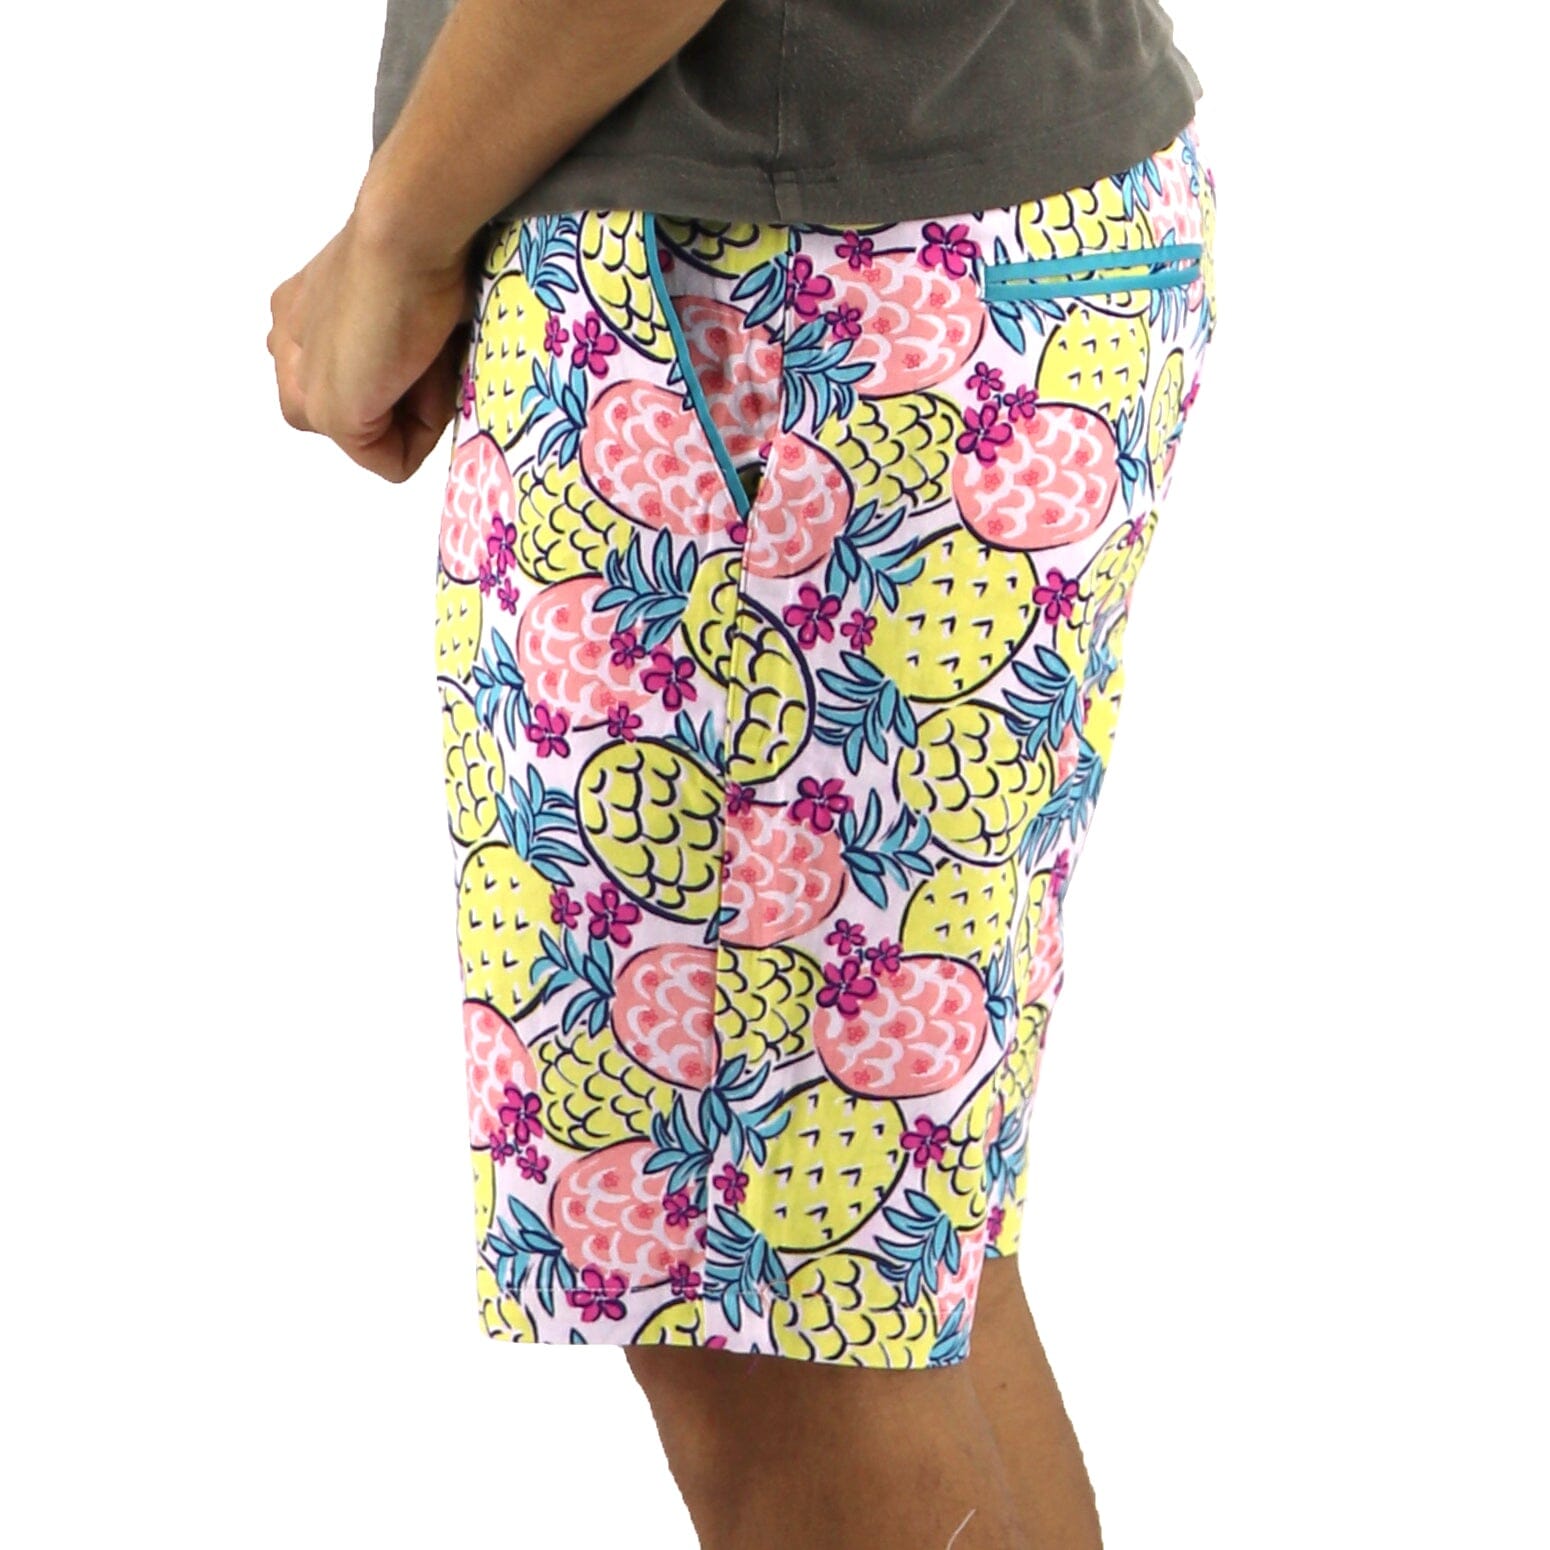 Pineapple Shorts For Men. Buy Mens Pineapple Shorts Online